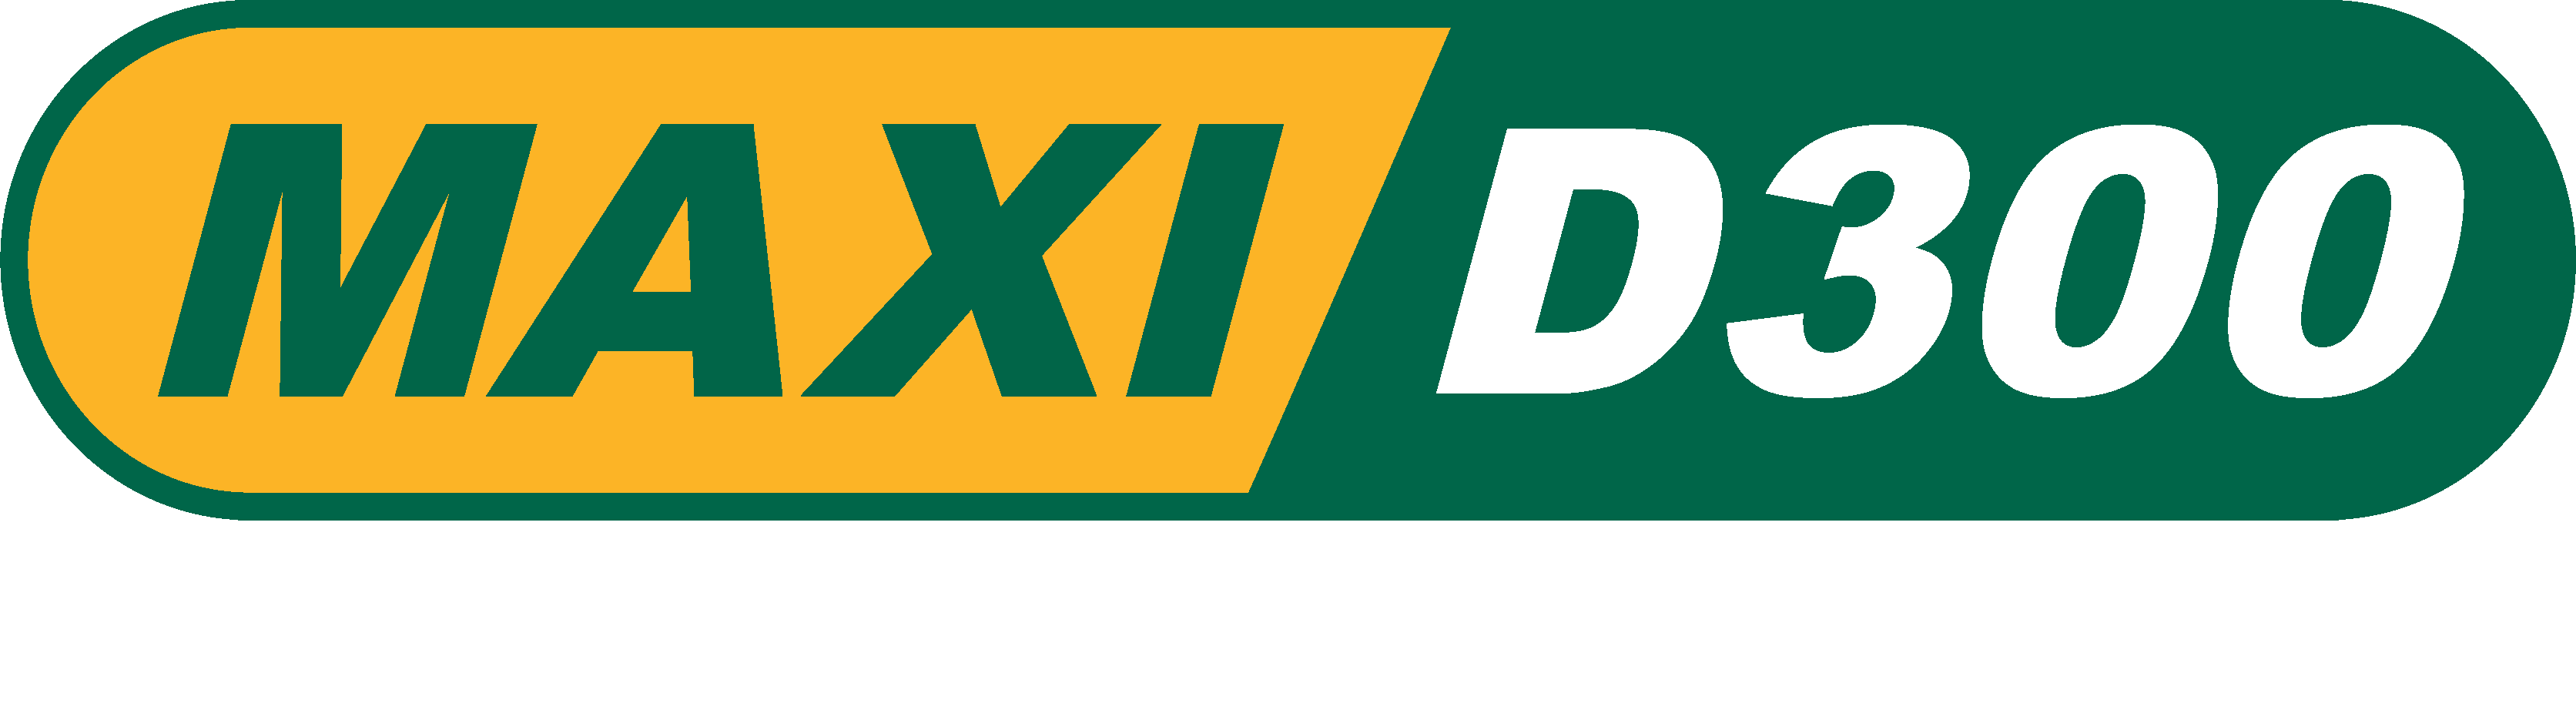 Maxi D300 slogan_white 2